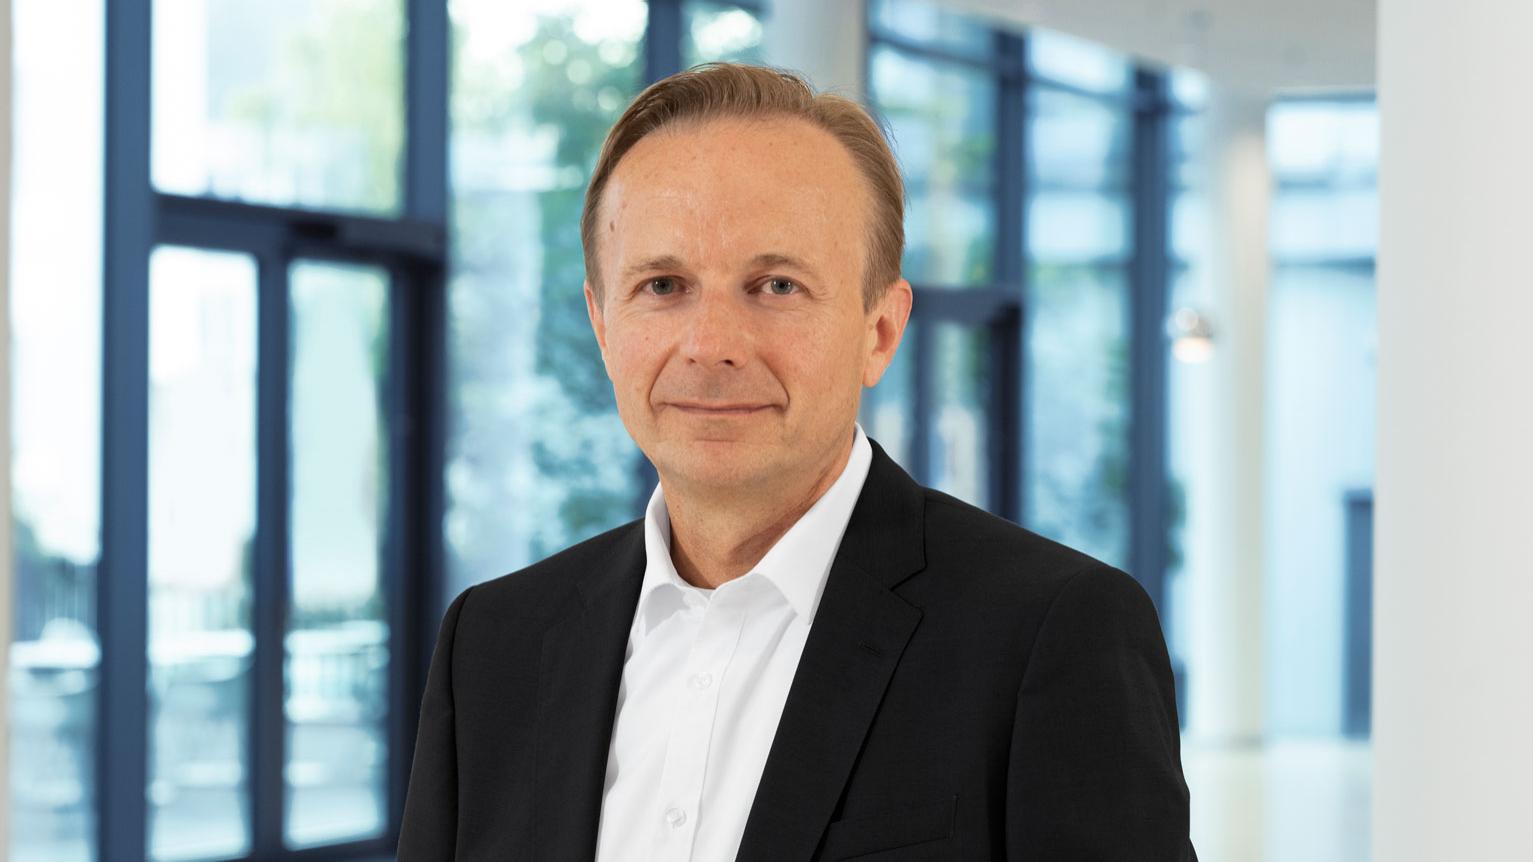 Dr. Christian Müller, CFO of Carl Zeiss AG